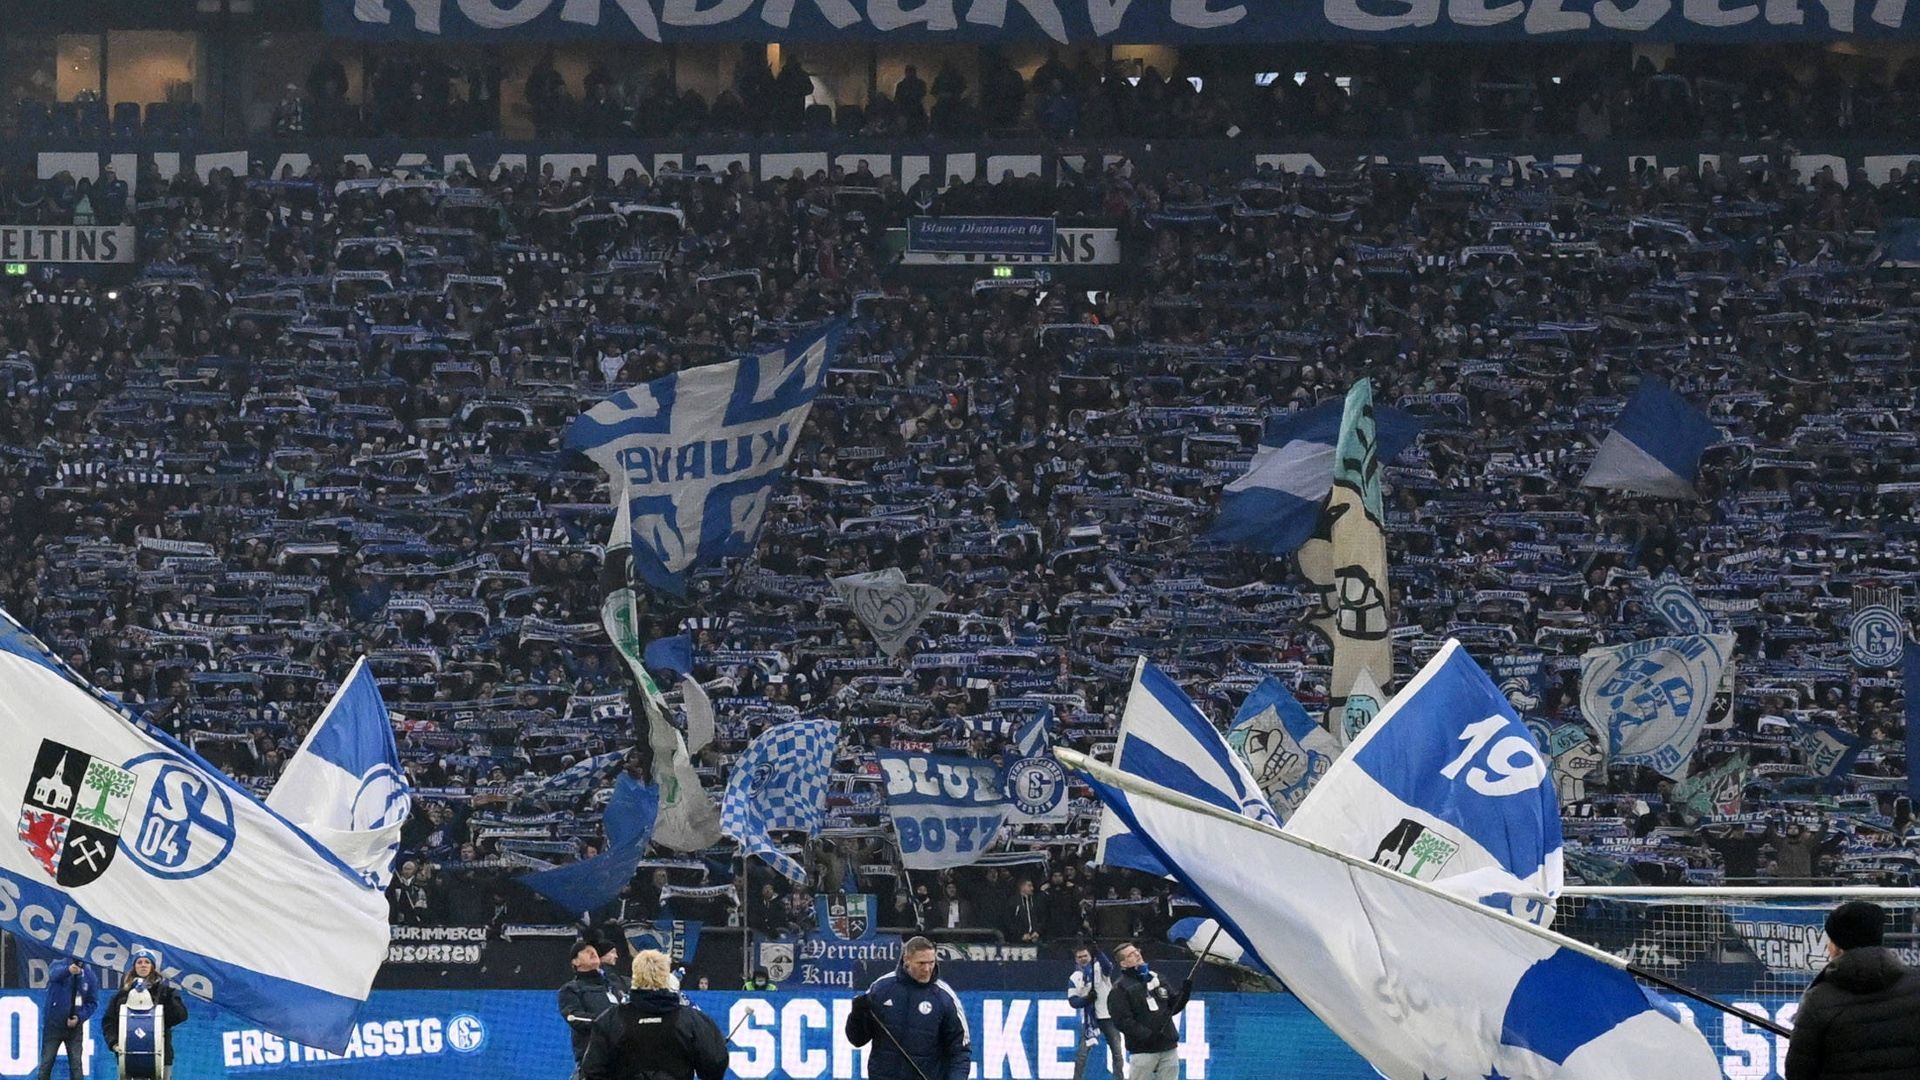 
                <strong>Platz 4 - Veltins Arena (Schalke 04)</strong><br>
                Sportlich der erste Abstiegskandidat, beim Fan-Erlebnis reif für die Champions League: Das Schalker Stadion besticht vor allem bei der Verpflegung. 4,60 Euro fürs Bier und vor allem nur 3,10 Euro für die Bratwurst sprechen für ein gutes Preis-Leistungs-Verhältnis.
              